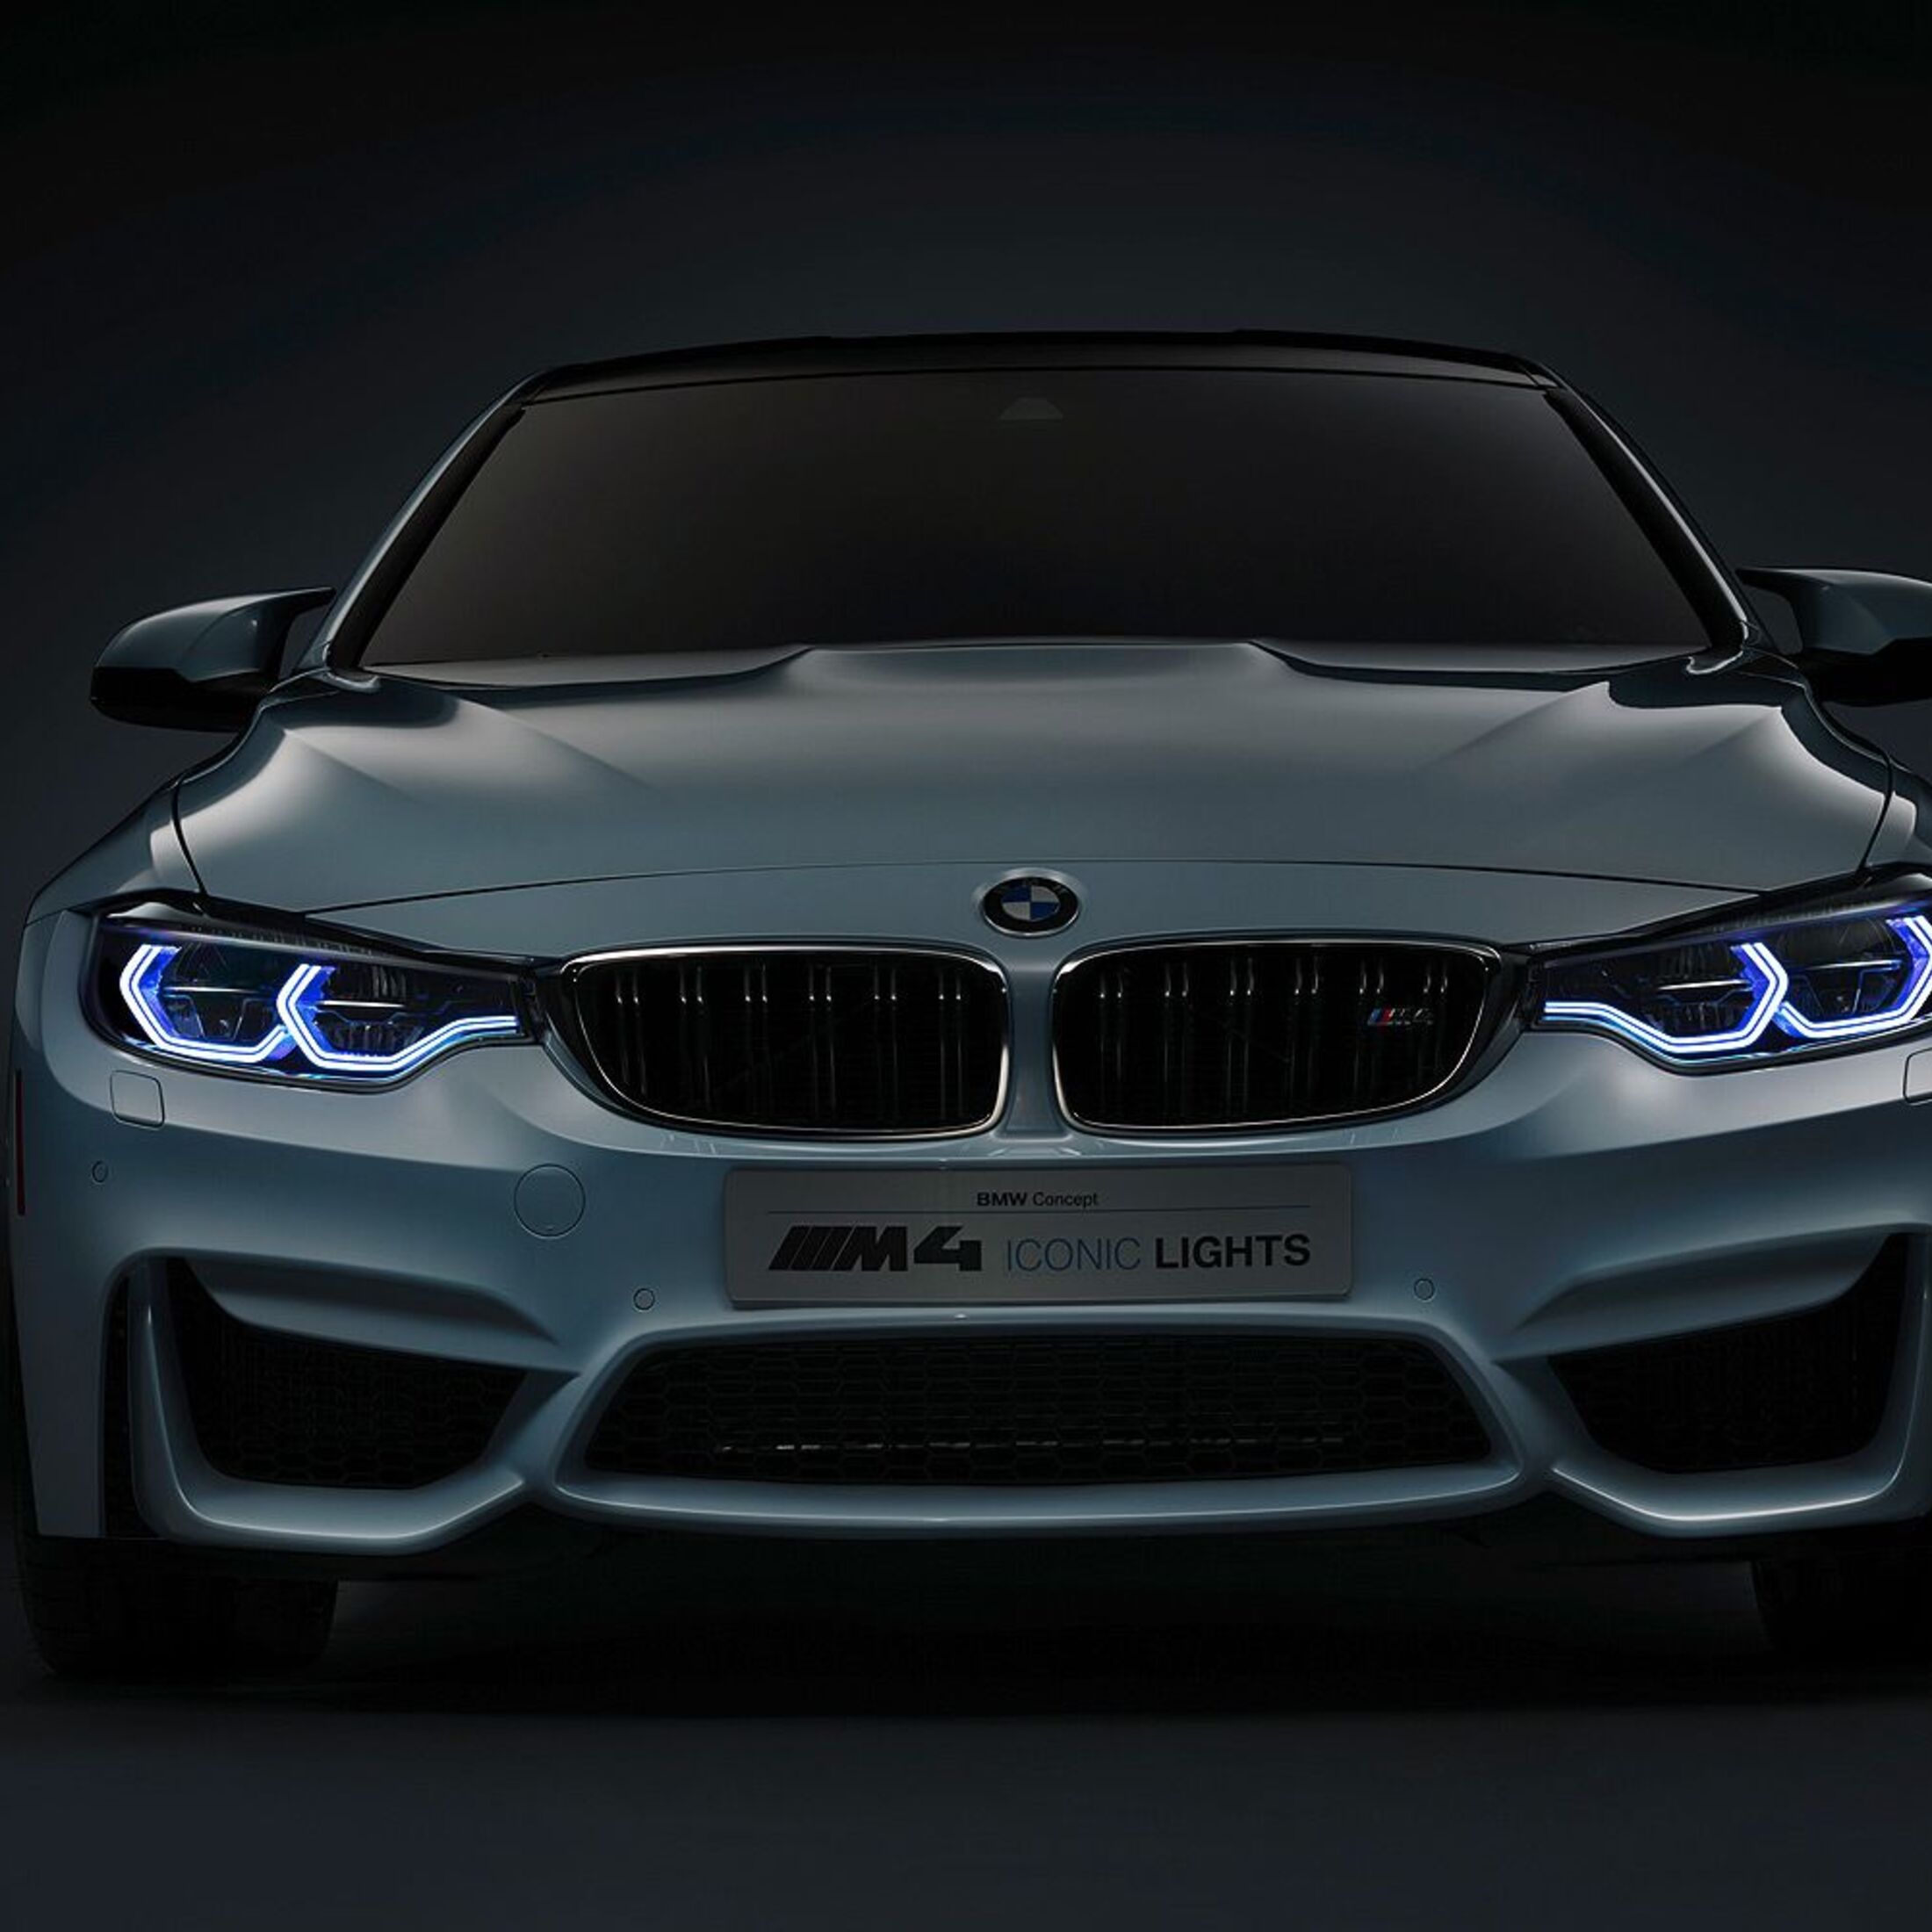 https://imgr1.auto-motor-und-sport.de/BMW-M4-Concept-Iconic-Lights-jsonLd1x1-24057efc-833869.jpg